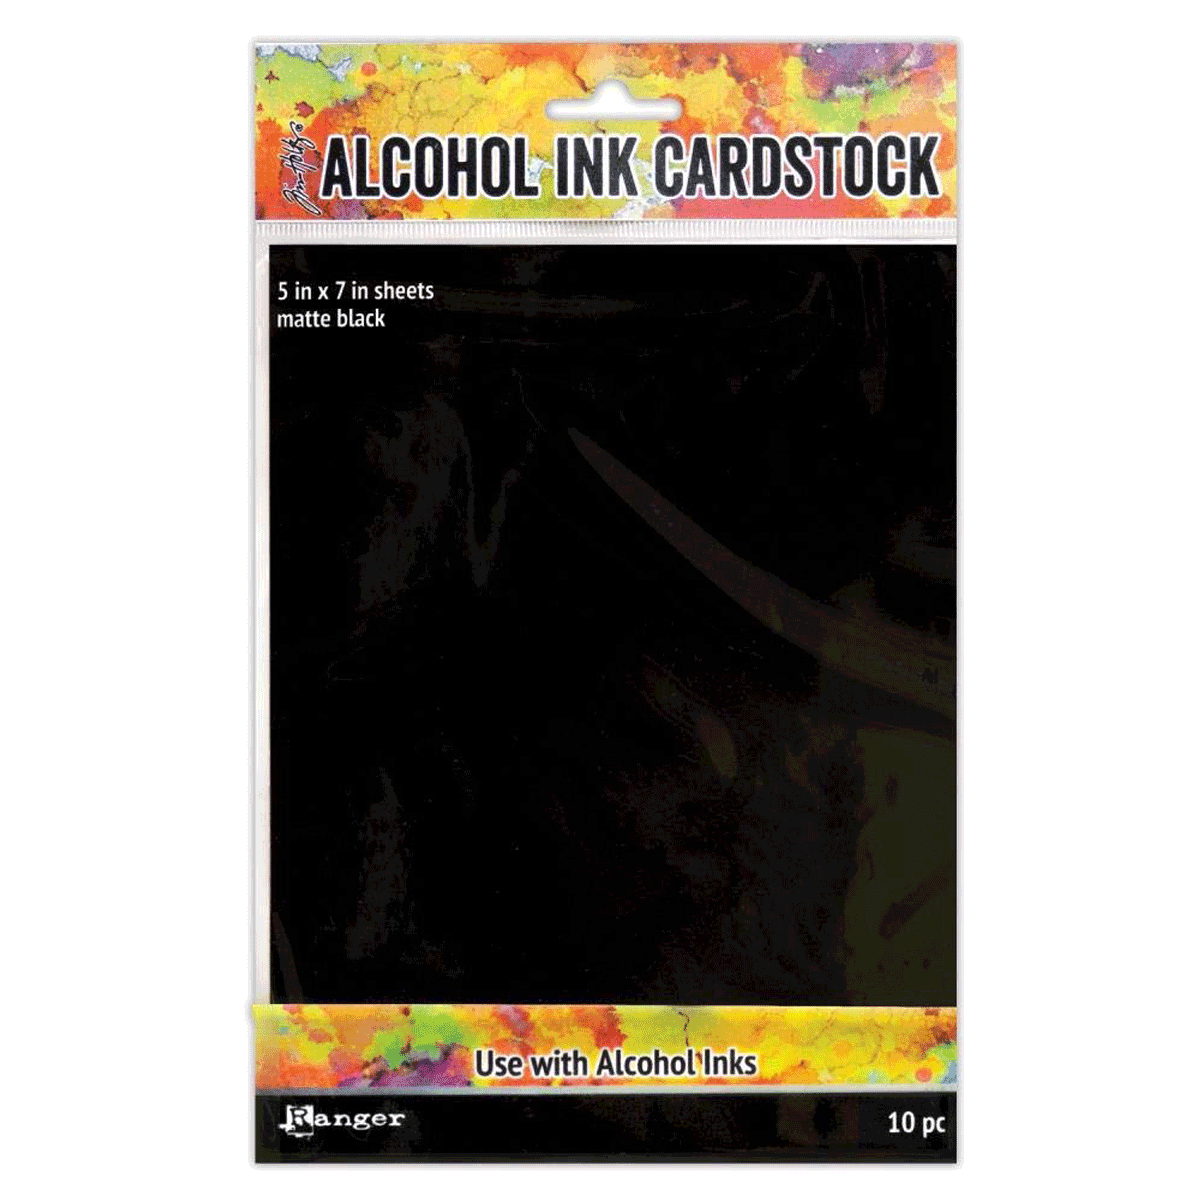 Tim Holtz Alcohol Ink Cardstock Black Matte, 10 pc